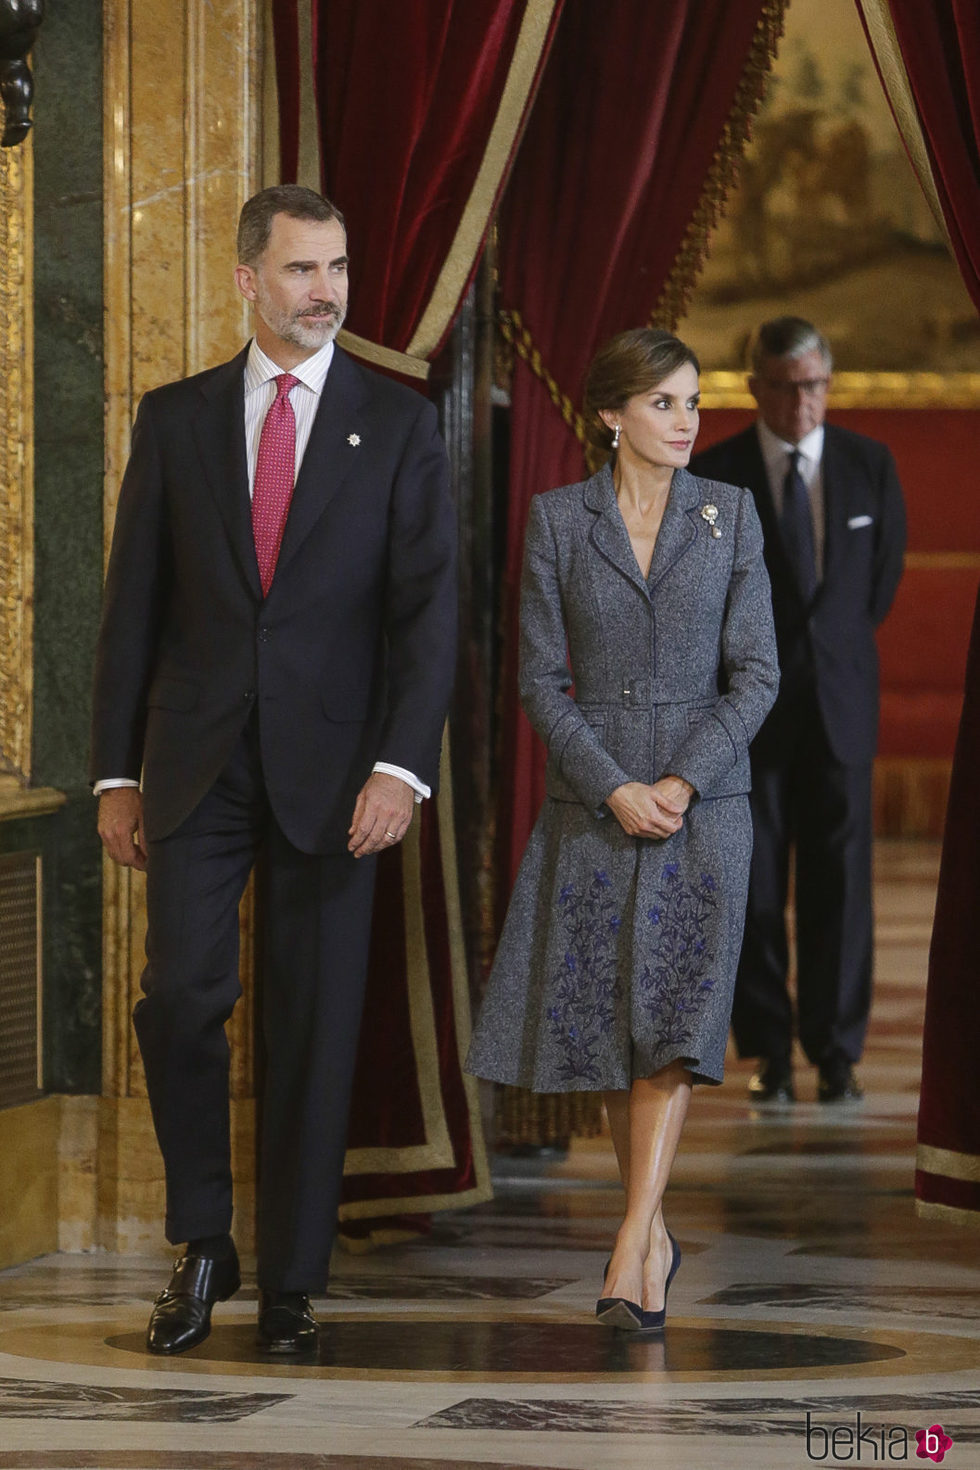 Los Reyes Felipe y Letizia en la recepción del Día de la Hispanidad 2017